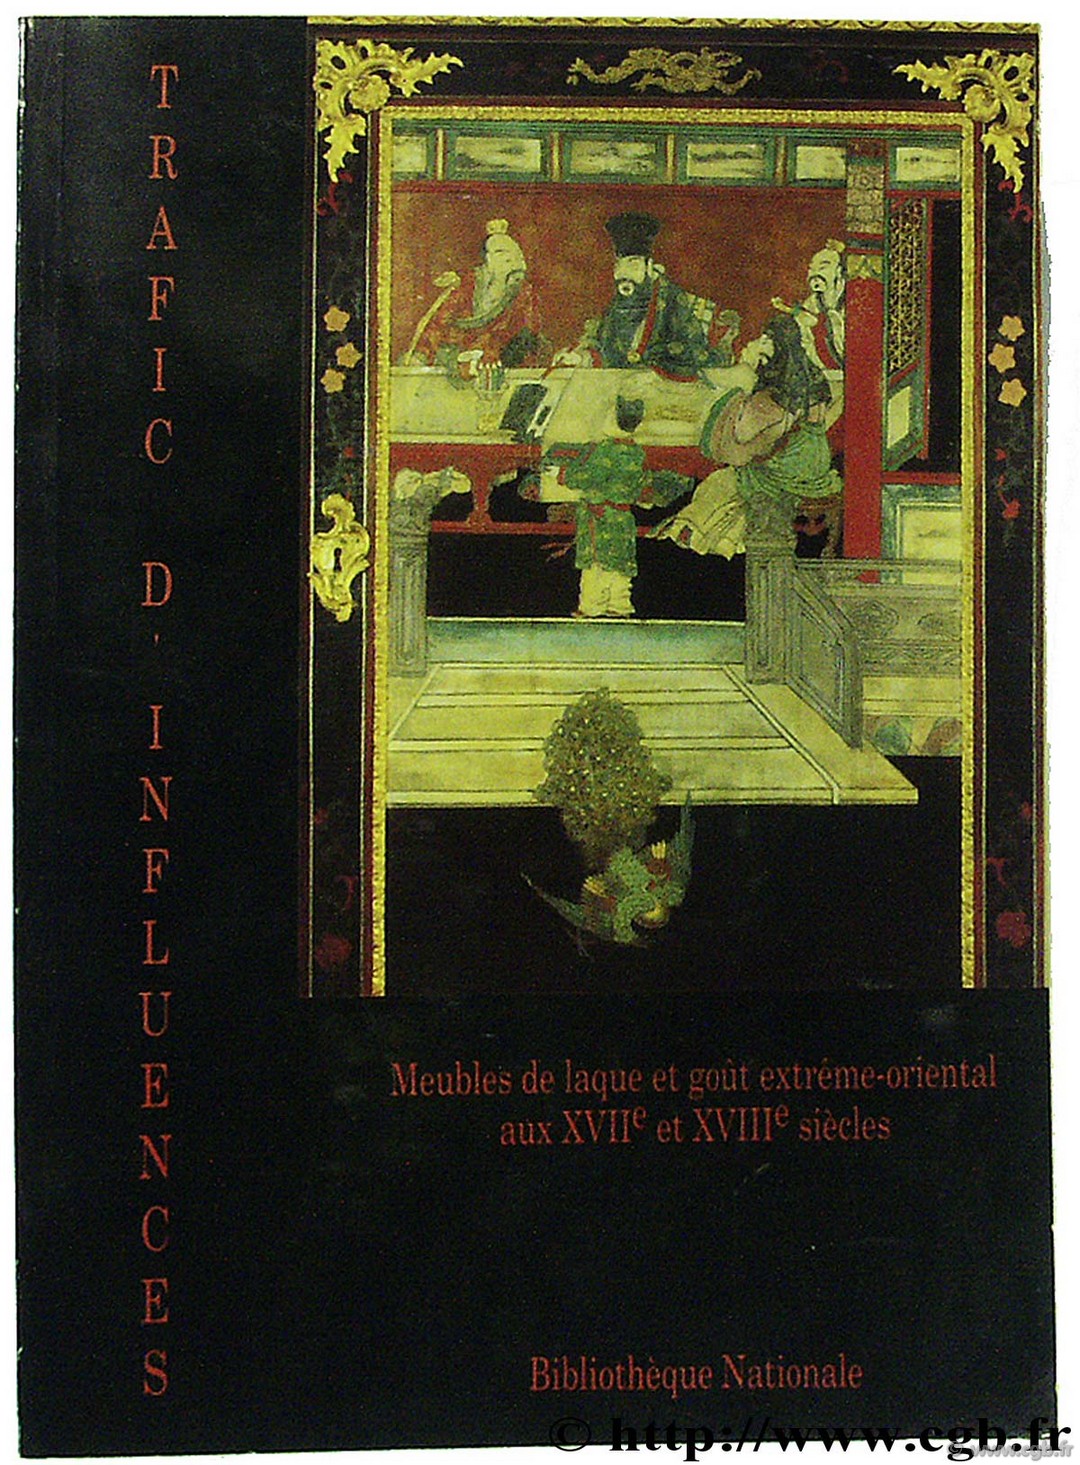 Trafic d influence, meubles de laque et goût extrème-oriental aux XVIIème et XVIIIème siècles CABINET DES MEDAILLES